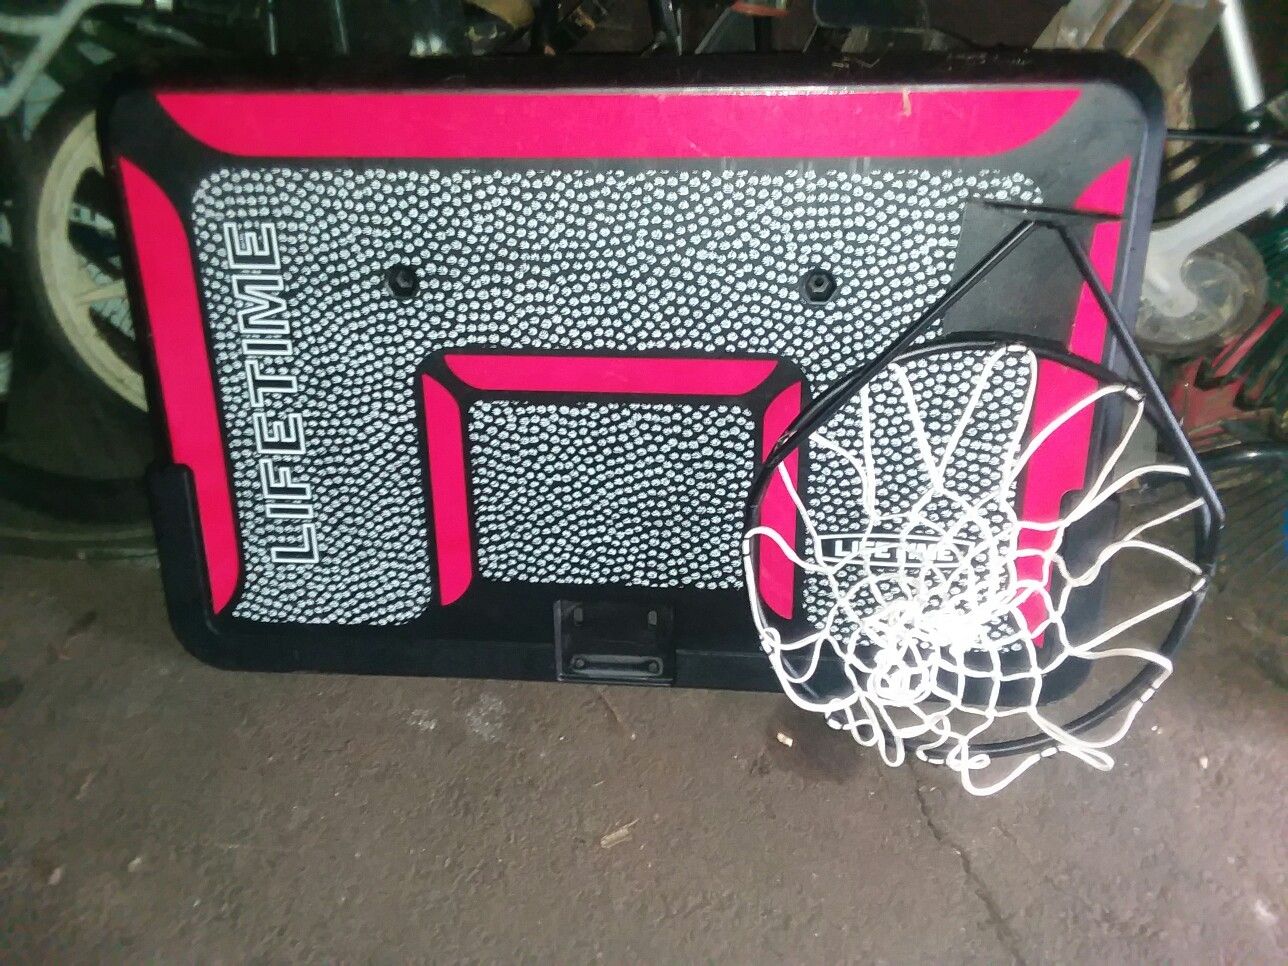 Basketball backboard and hoop